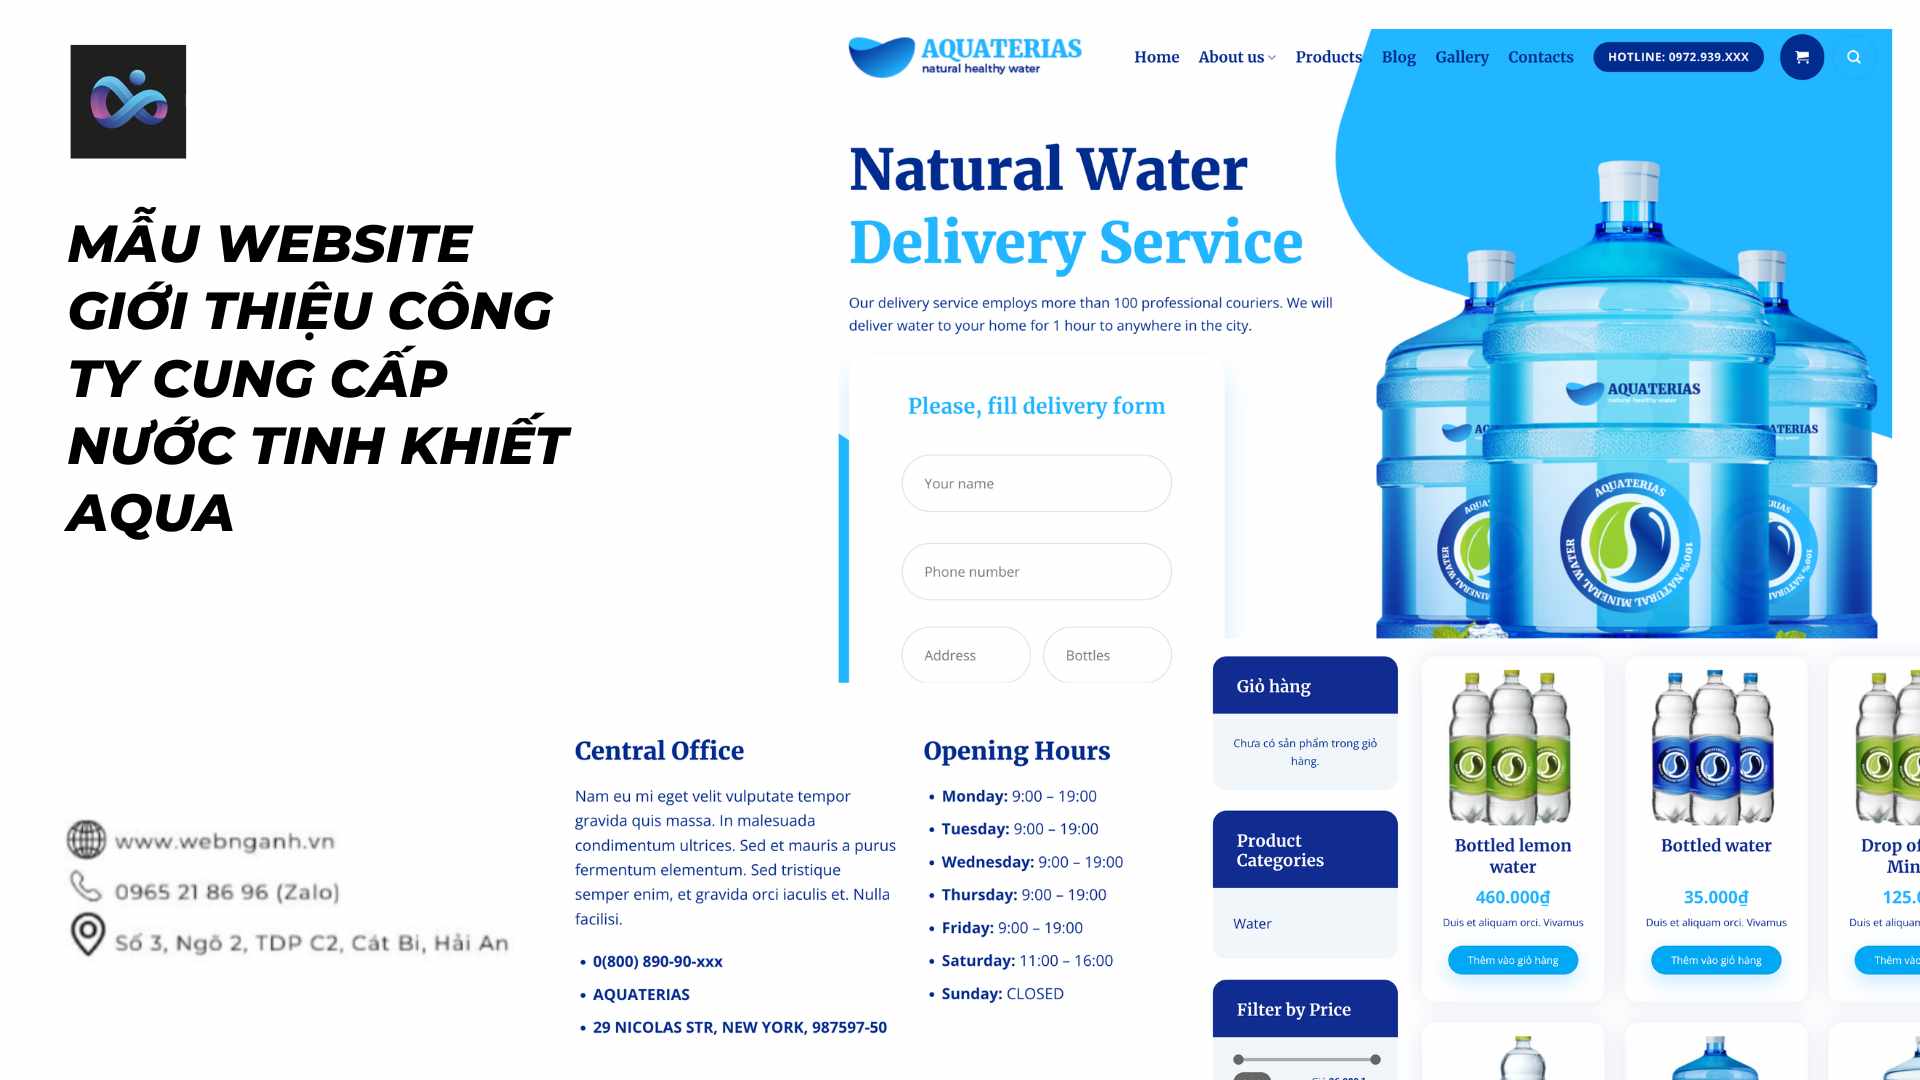 Mẫu Website giới thiệu công ty cung cấp nước tinh khiết Aqua